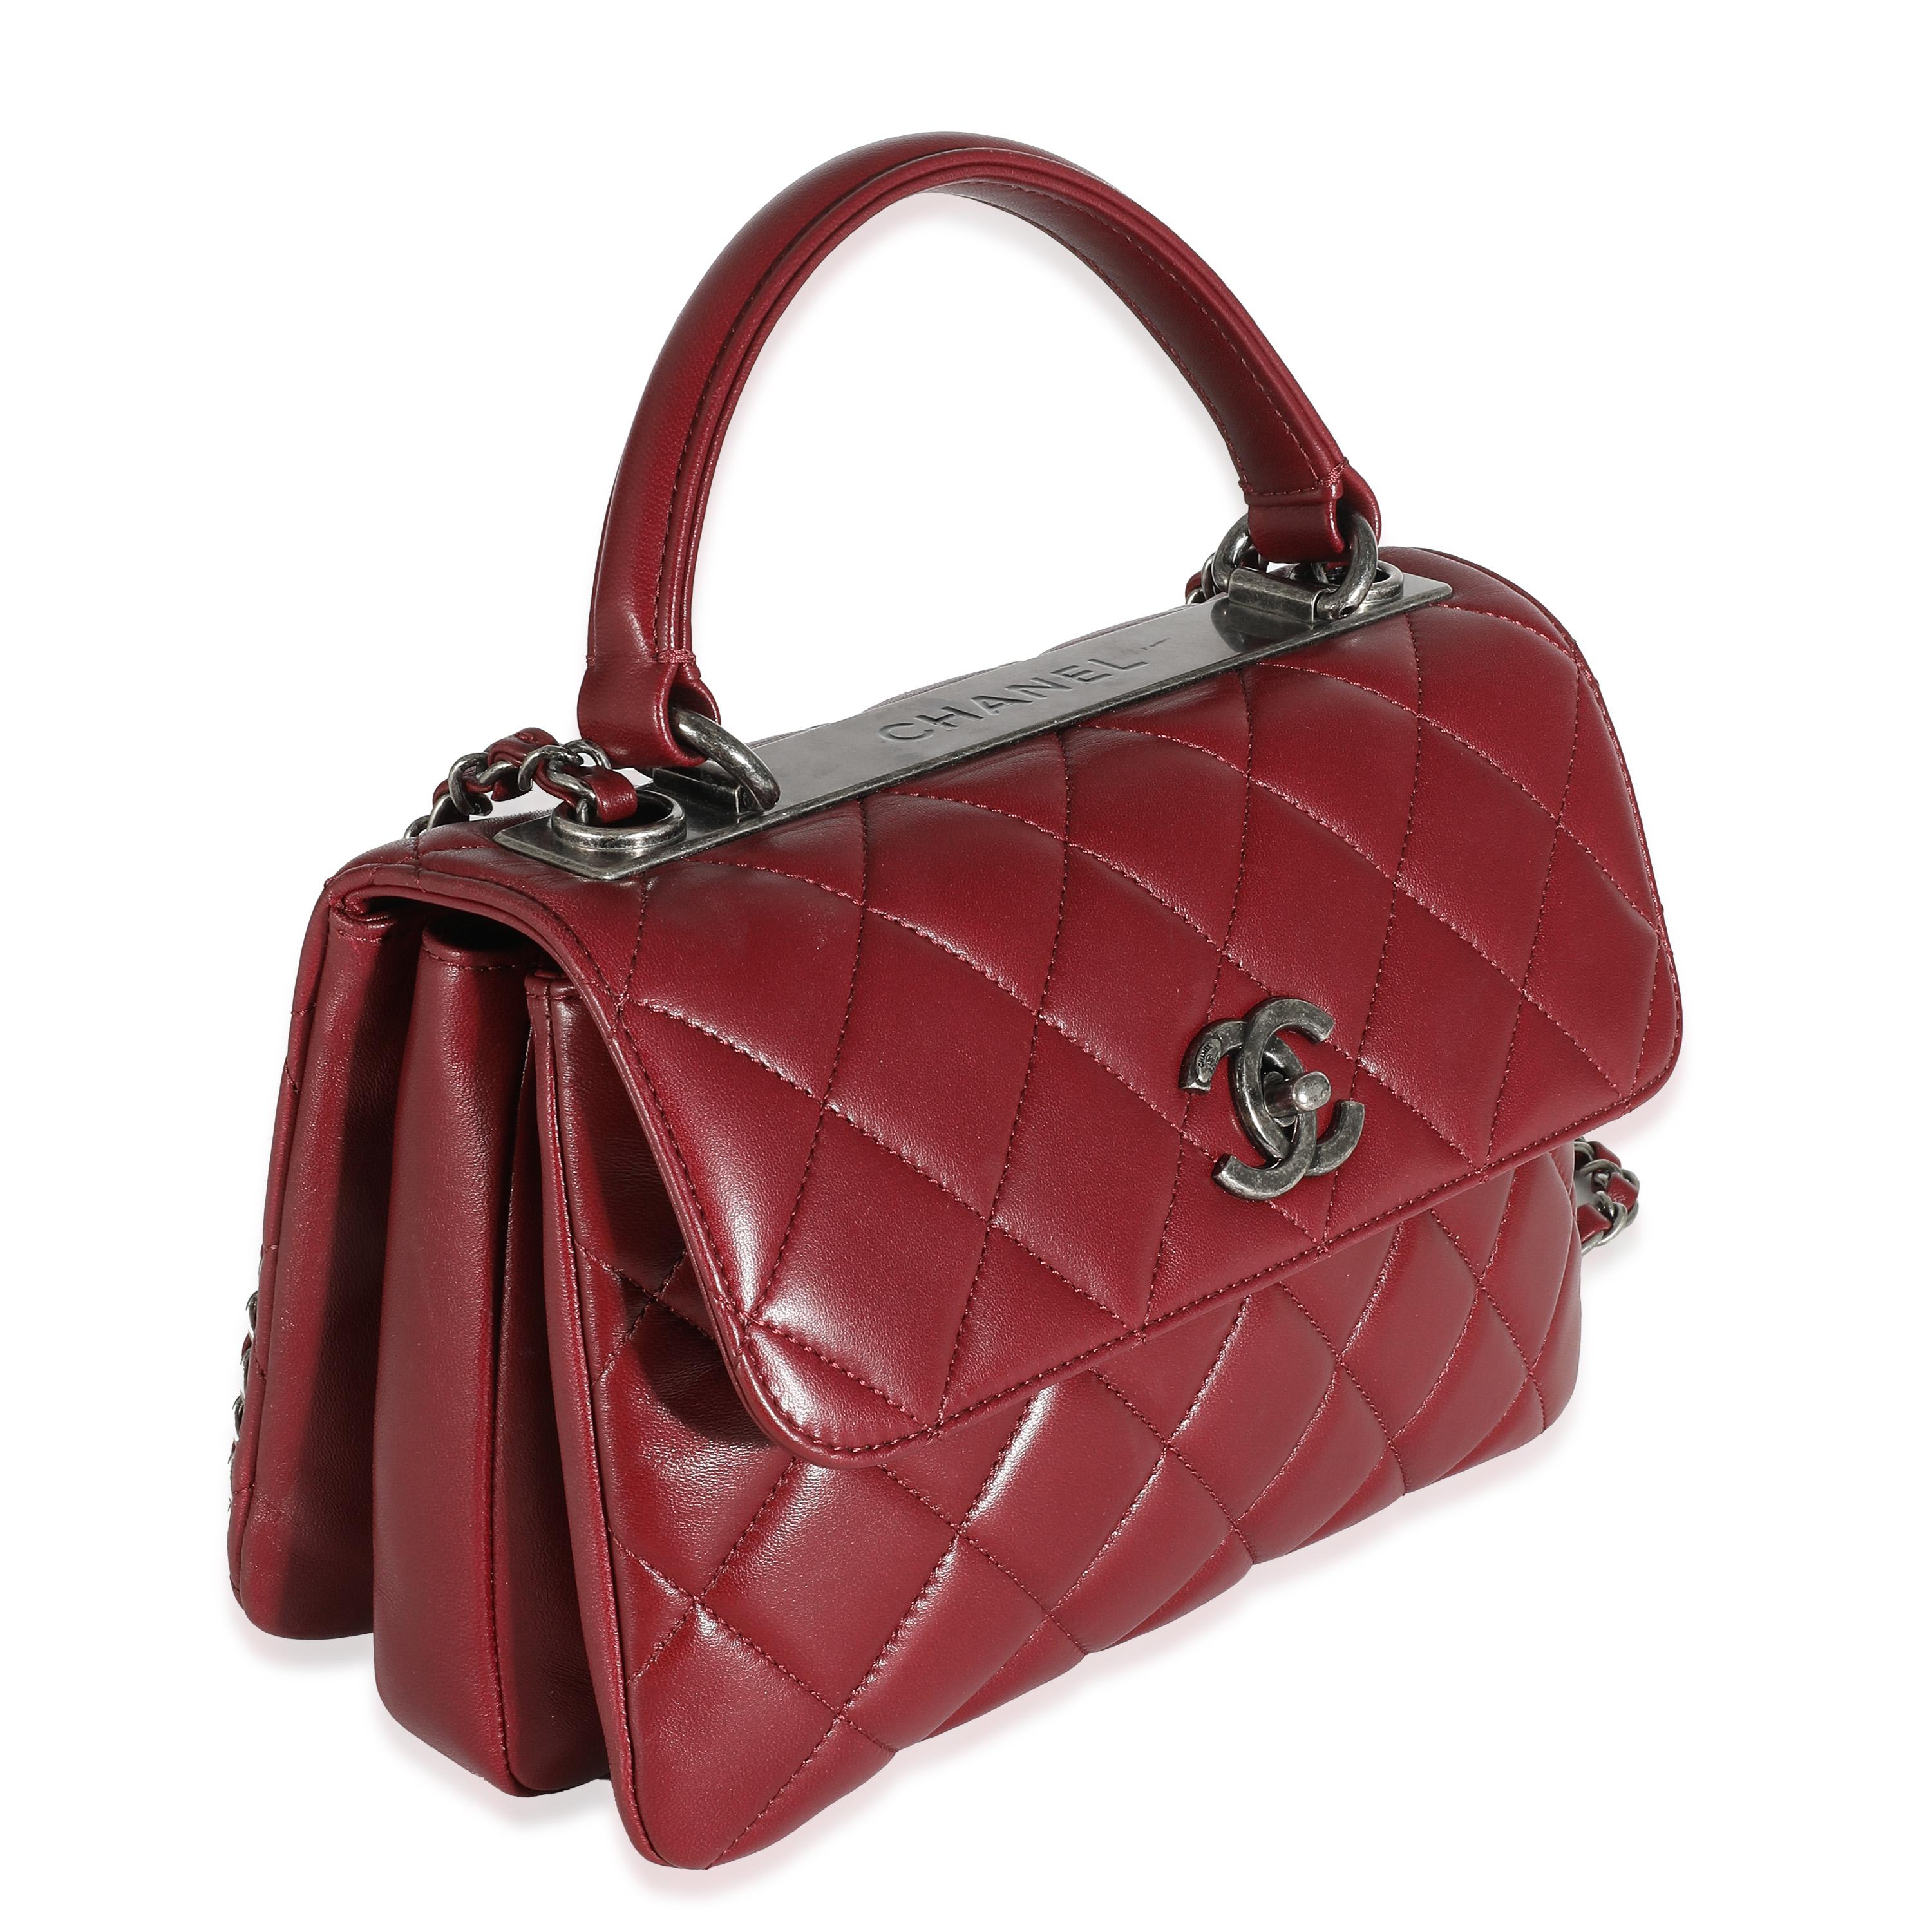 Titre du listing : Chanel Burgundy Quilted Lambskin Small Trendy Flap Bag
SKU : 136129
Condit : Usagé 
Description de l'état : Un classique intemporel qui ne se démode jamais, le sac à rabat de Chanel date de 1955 et a connu un certain nombre de